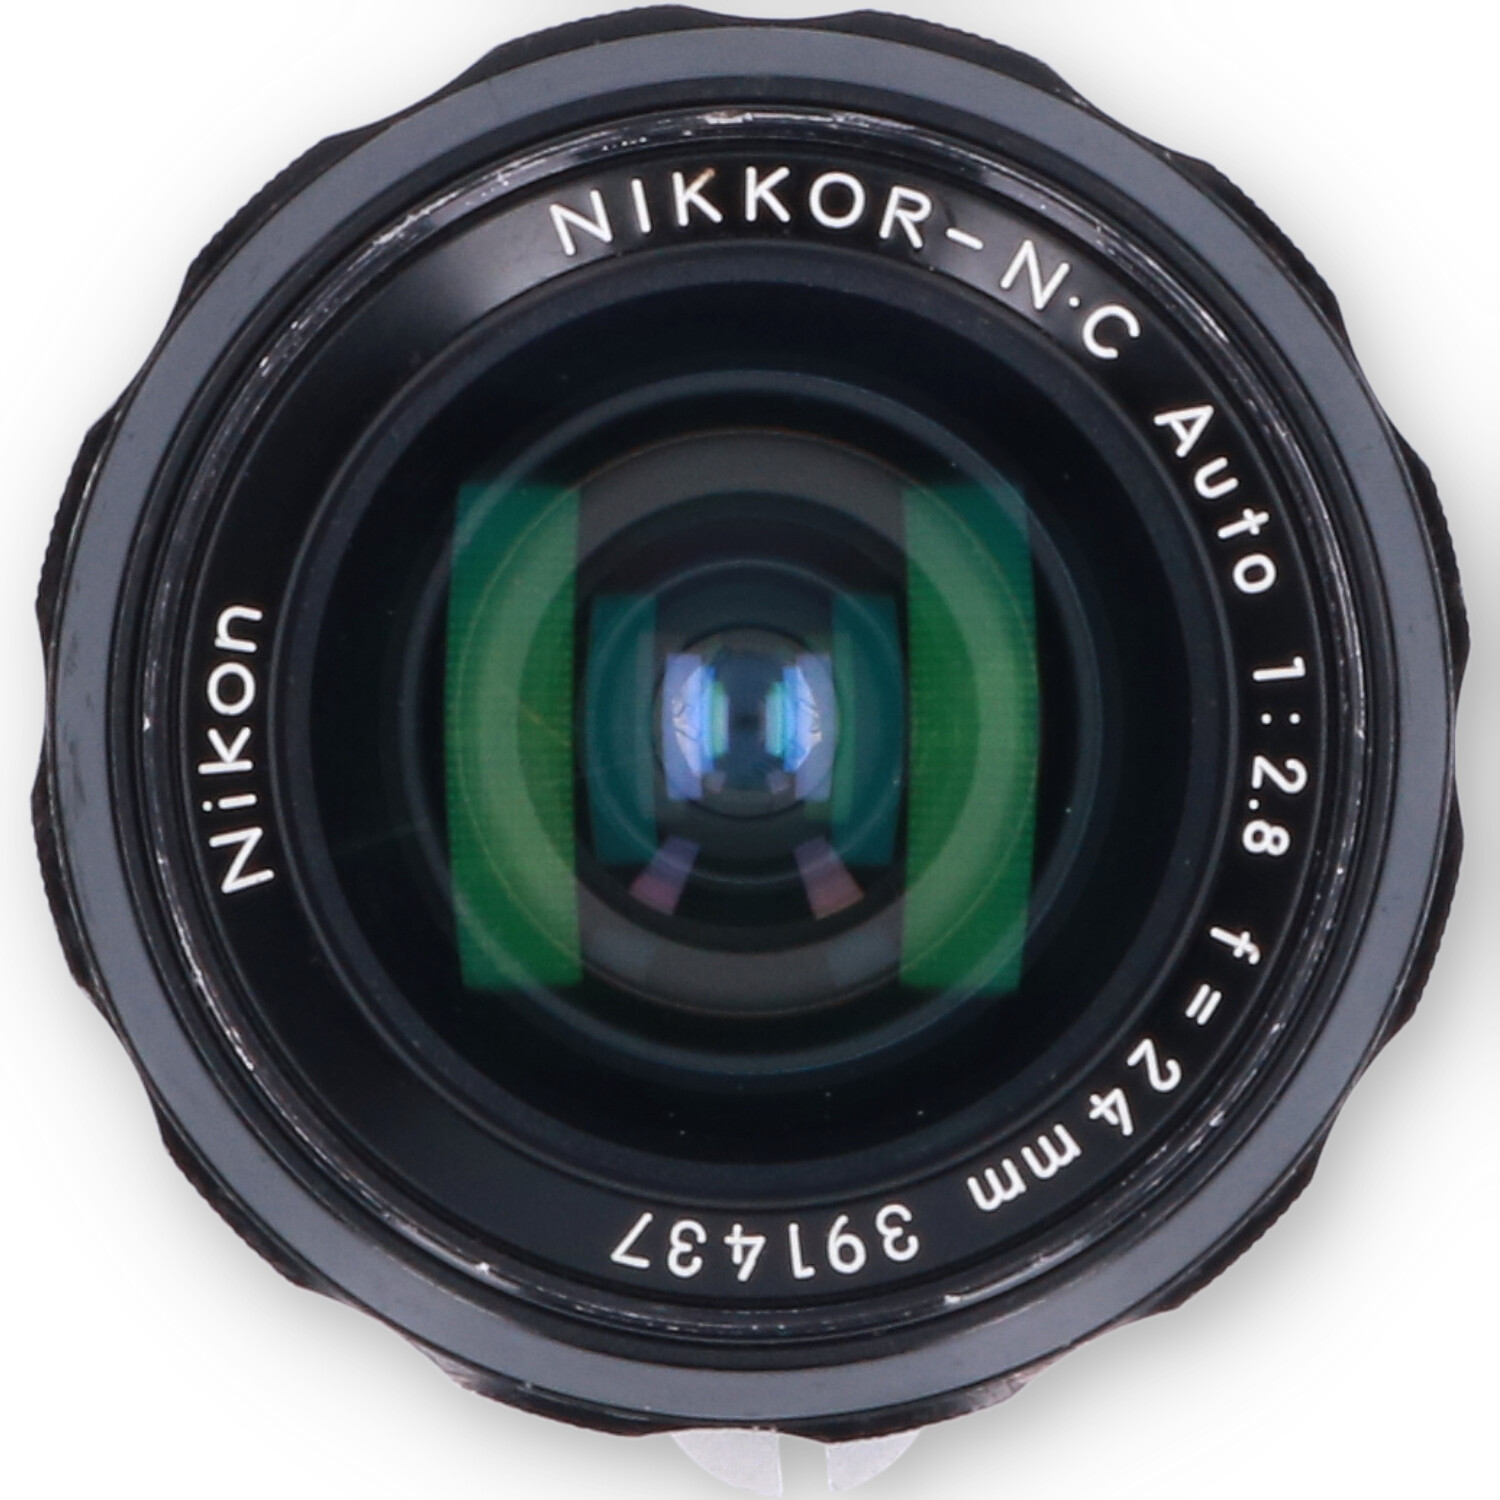 Nikon Nikkor-NC 24mm f/2.8 - No-Digital